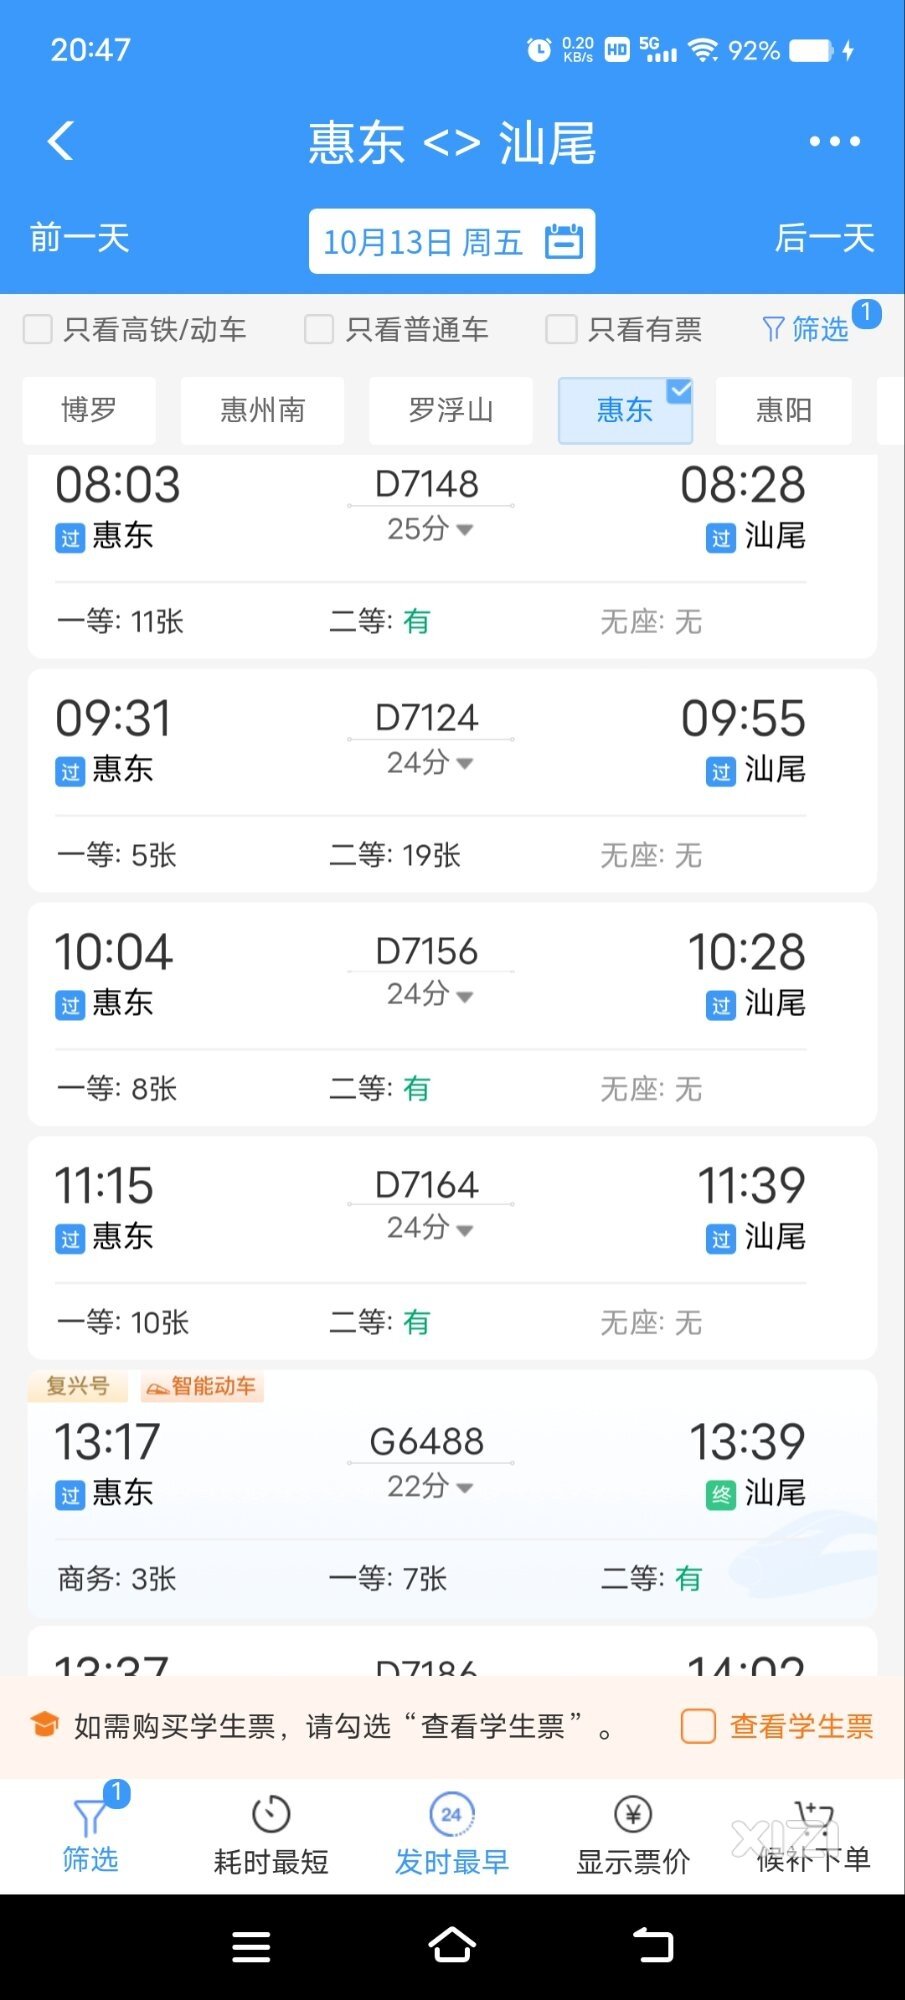 惠东两个高铁站来往站点最多的汕尾站。1个41元、1个30元你会选择哪个